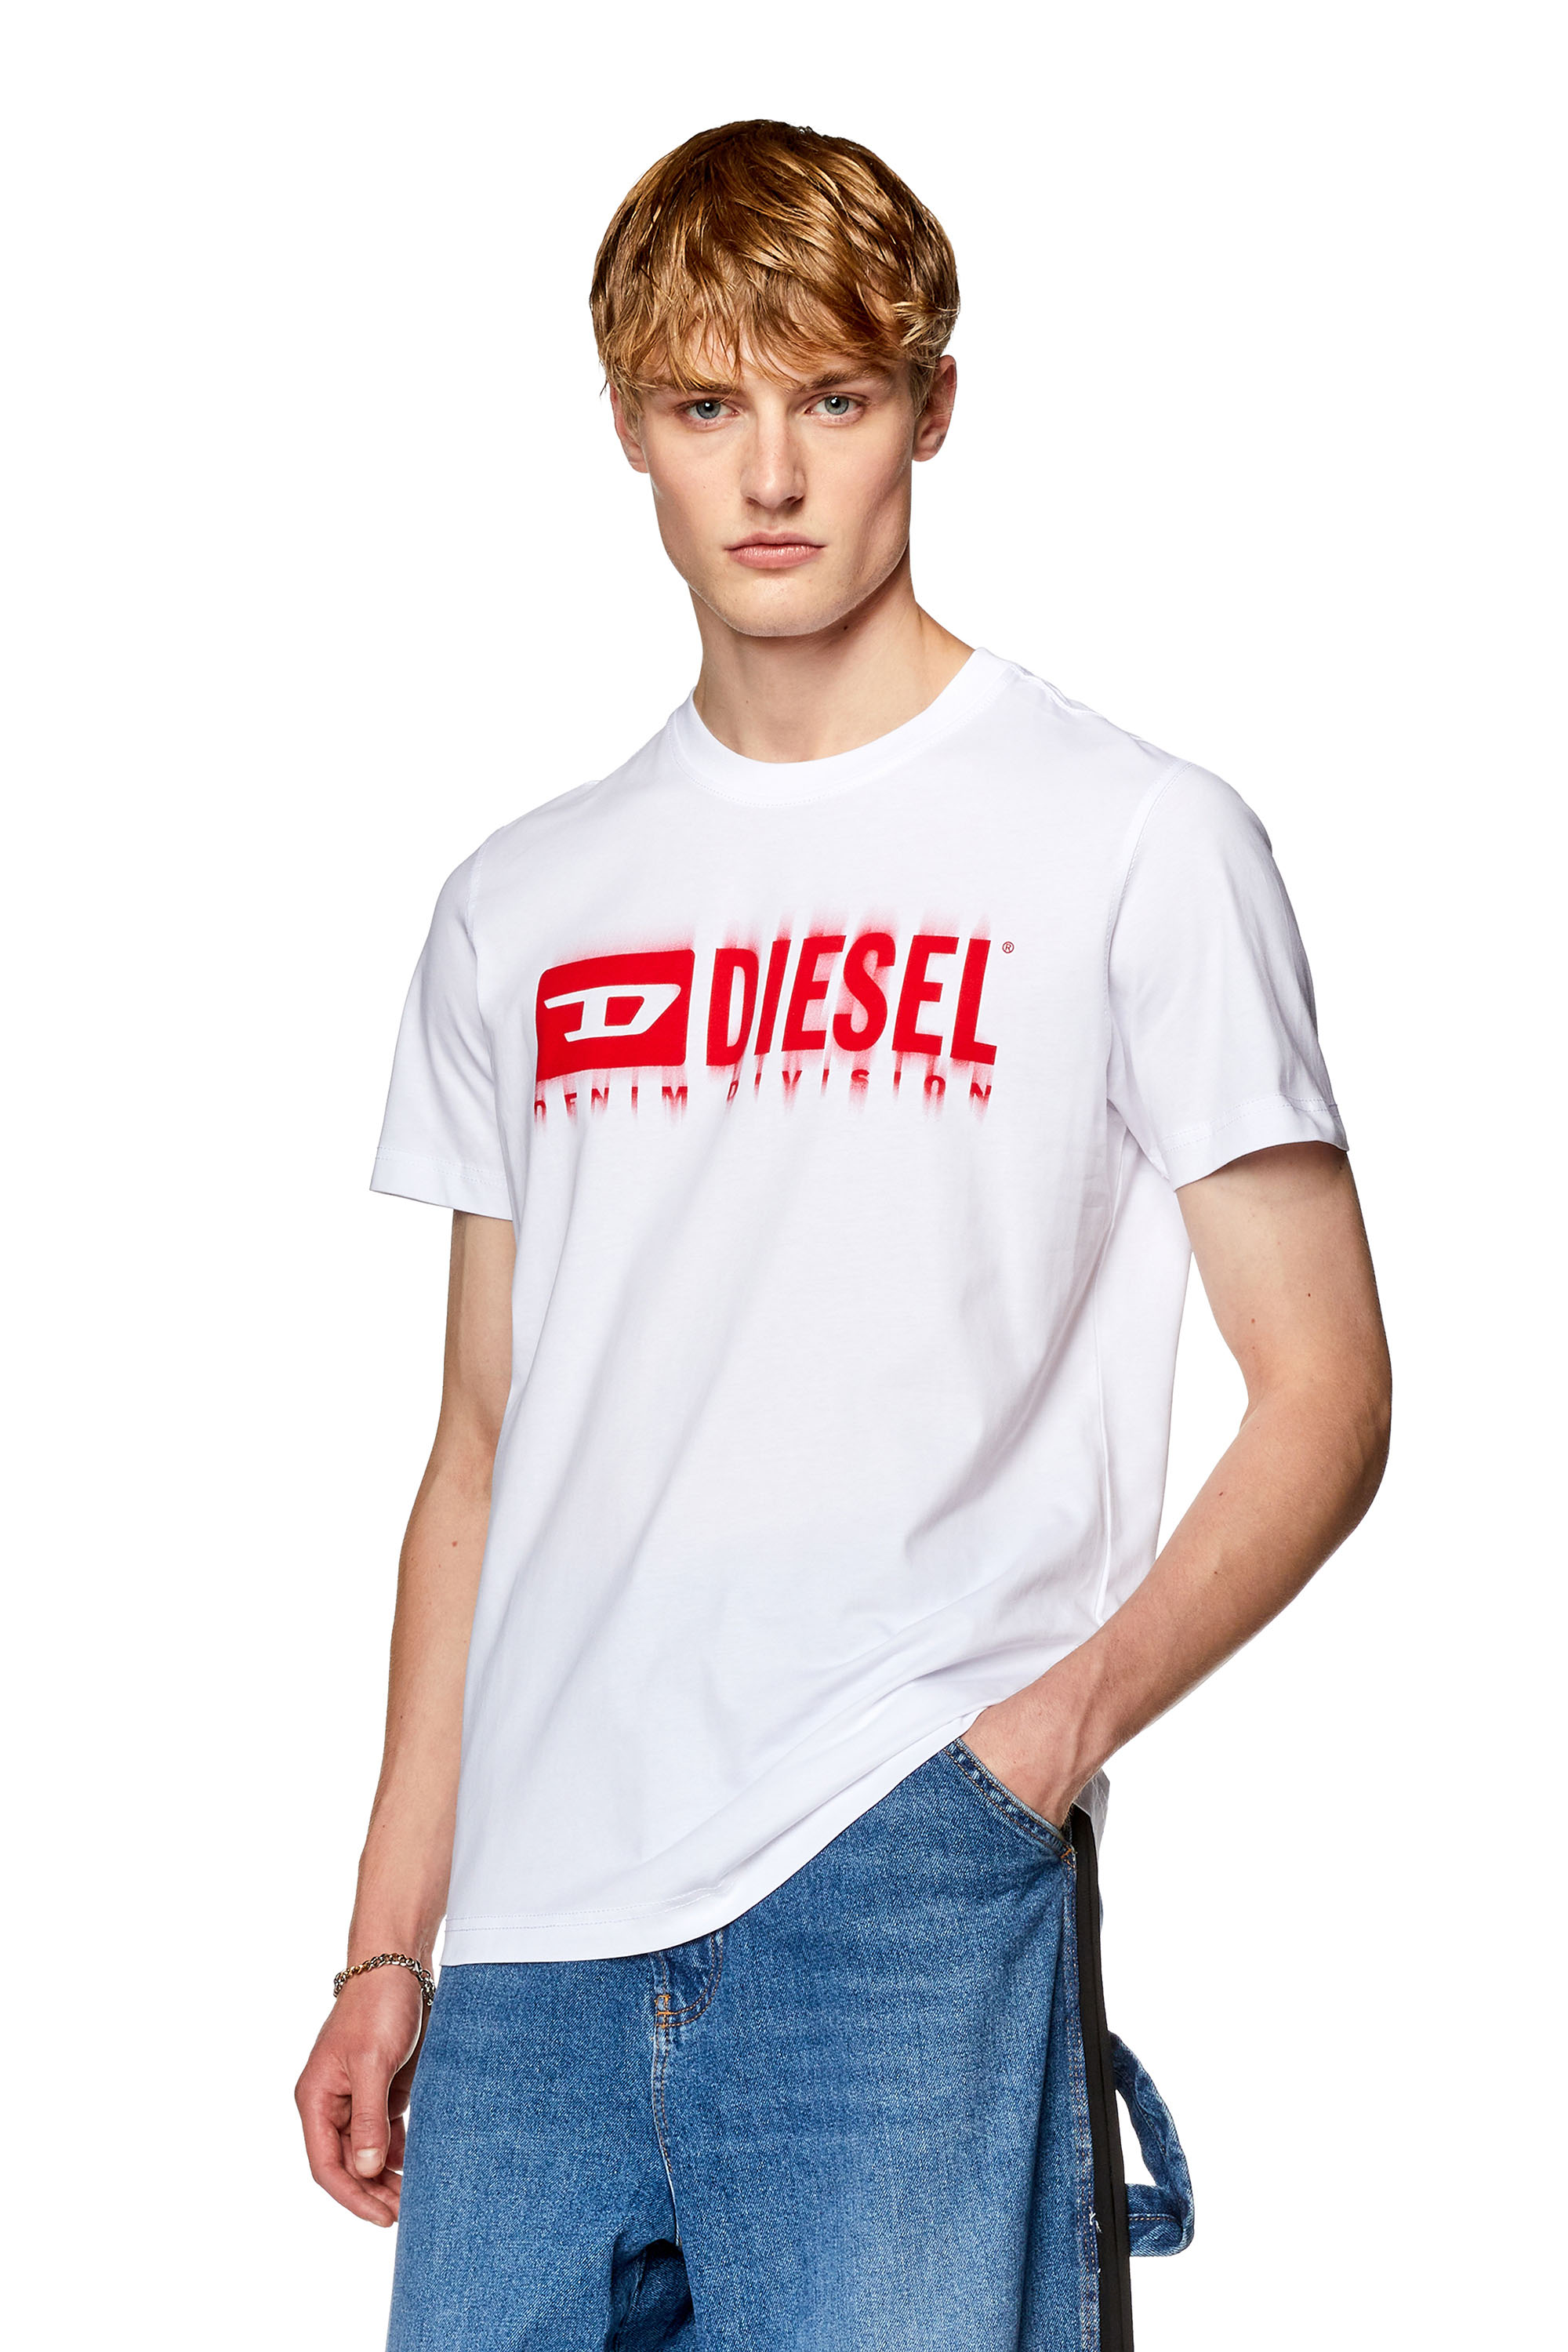 dieseldiesel